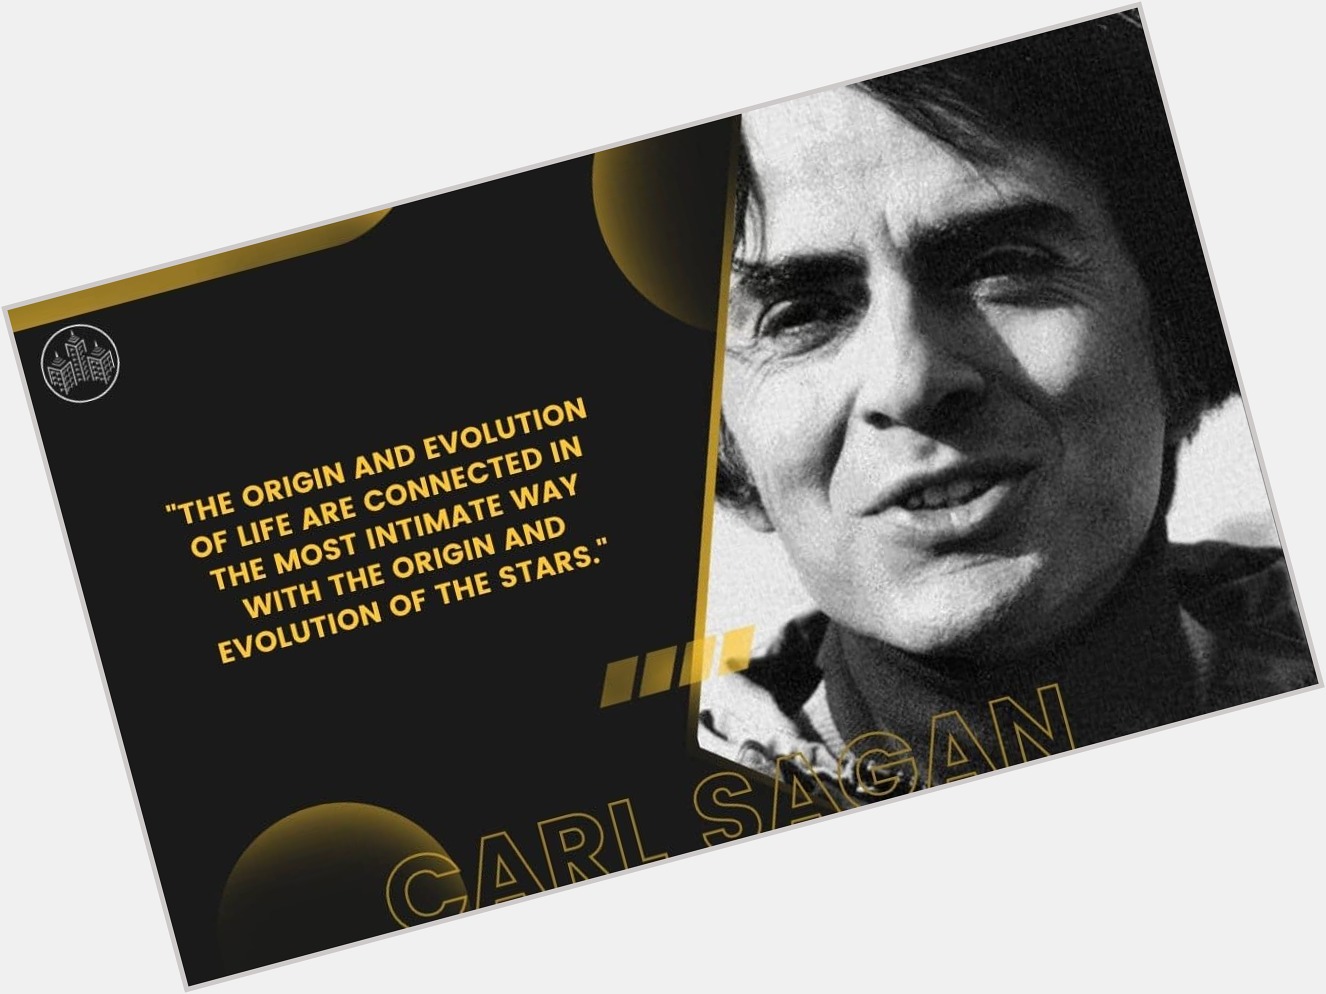 Happy Birthday Carl Sagan, you legend! 